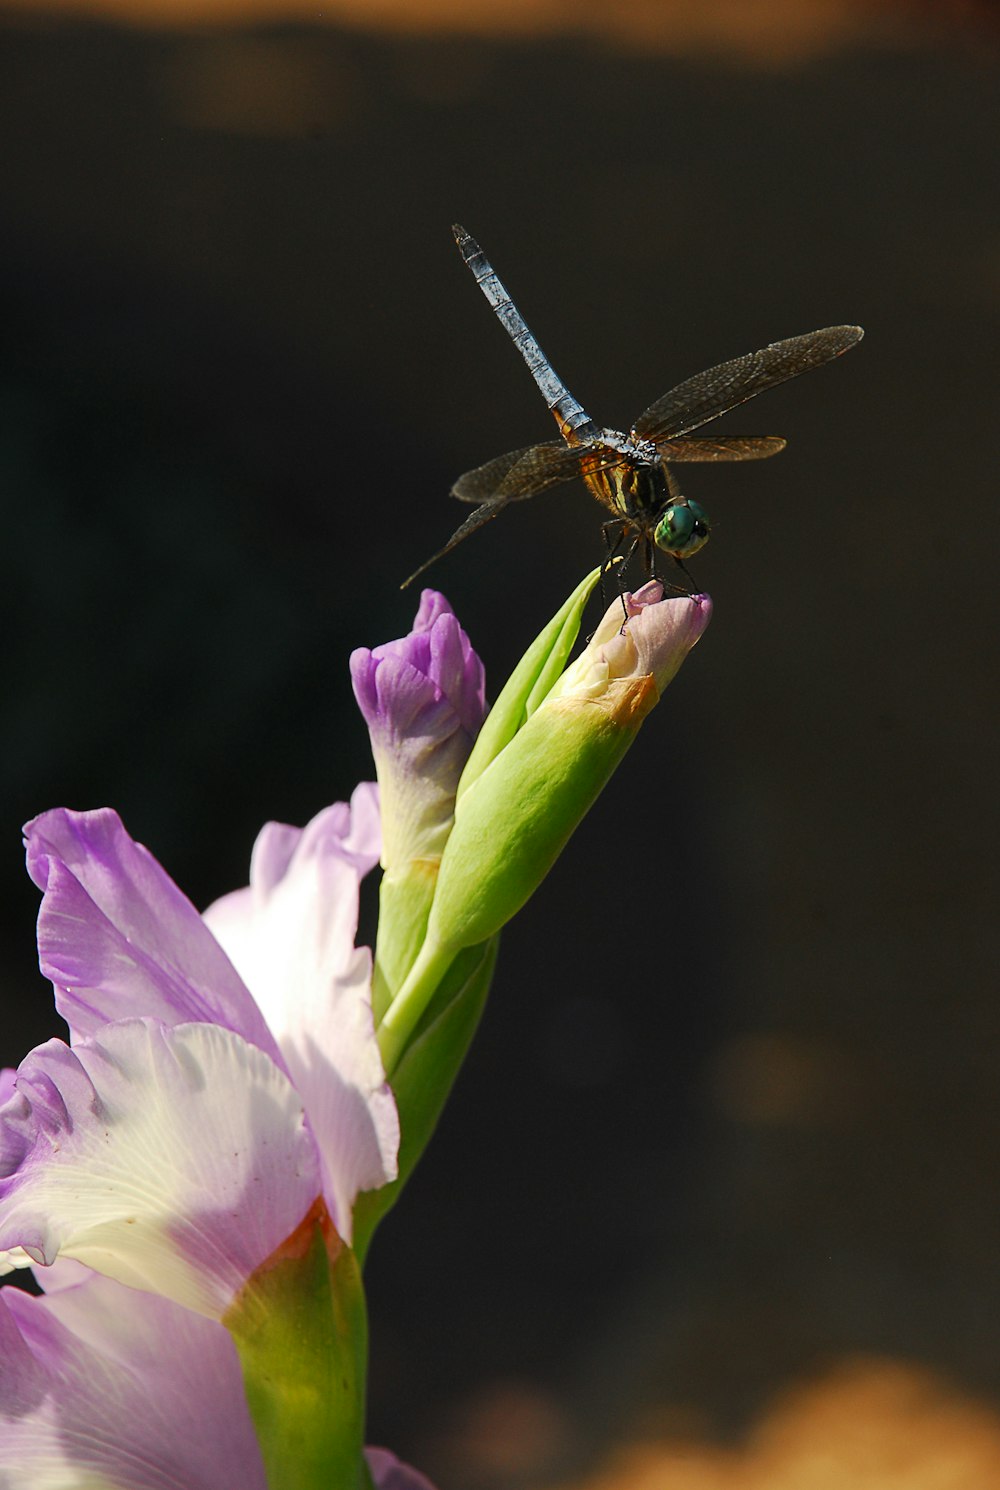 Eine Libelle, die auf einer lila Blume sitzt